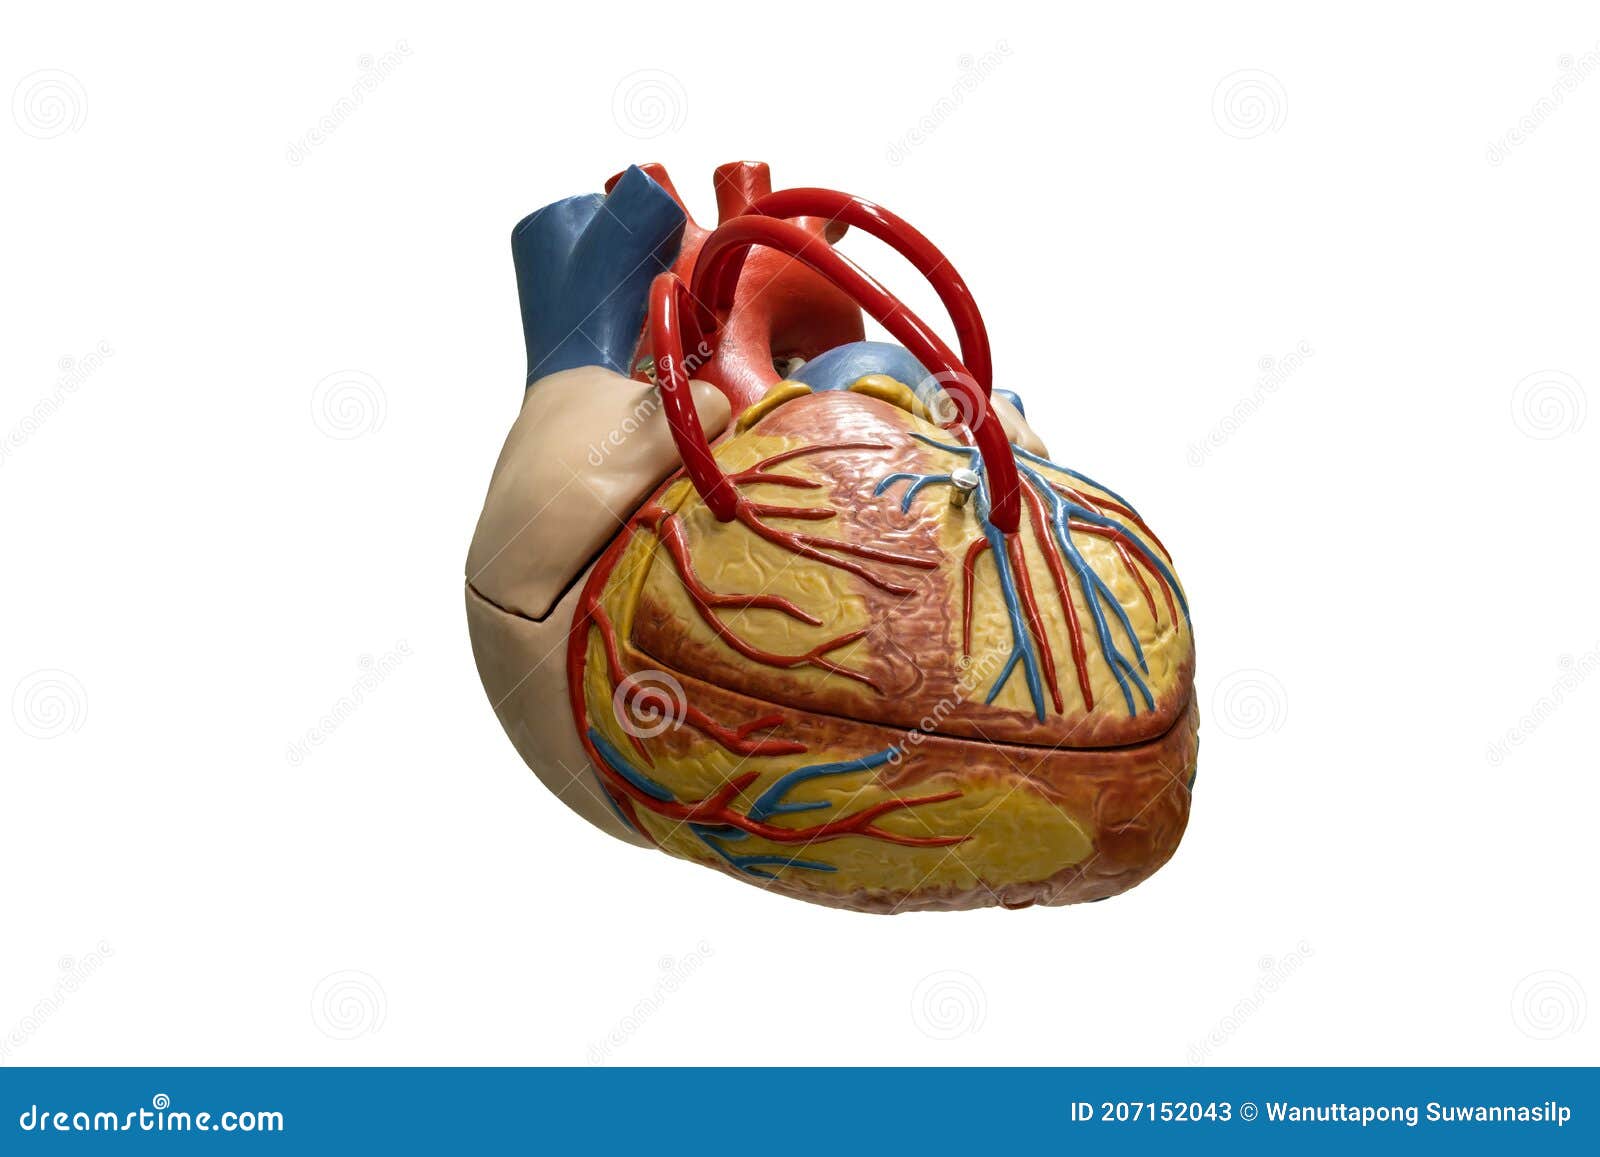 Anatomía Humana Modelo De Plástico De Corazón Aislado En Fondo Blanco  Imagen de archivo - Imagen de exterior, interno: 207152043